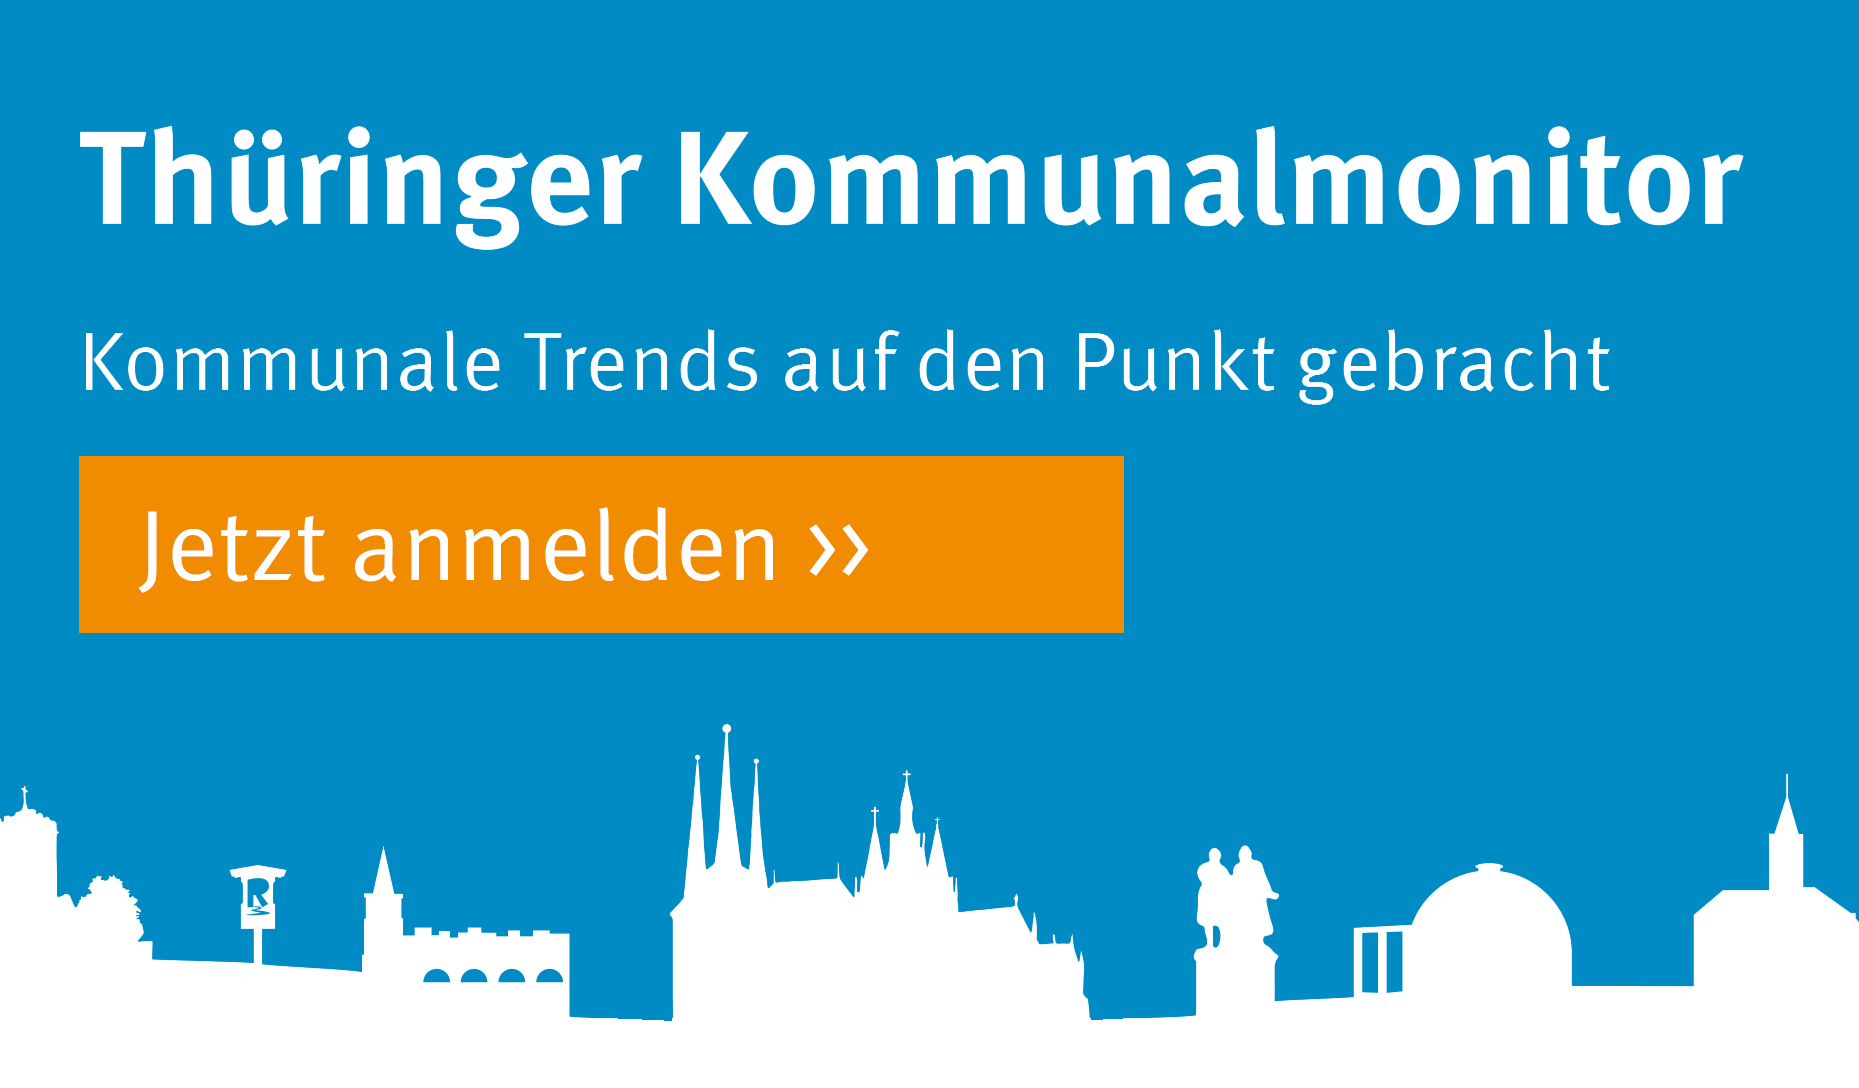 Thüringer Kommunalmonitor: Kommunale Trends auf den Punkt gebracht. Eine Studie im Auftrag der Thüringer Aufbaubank.